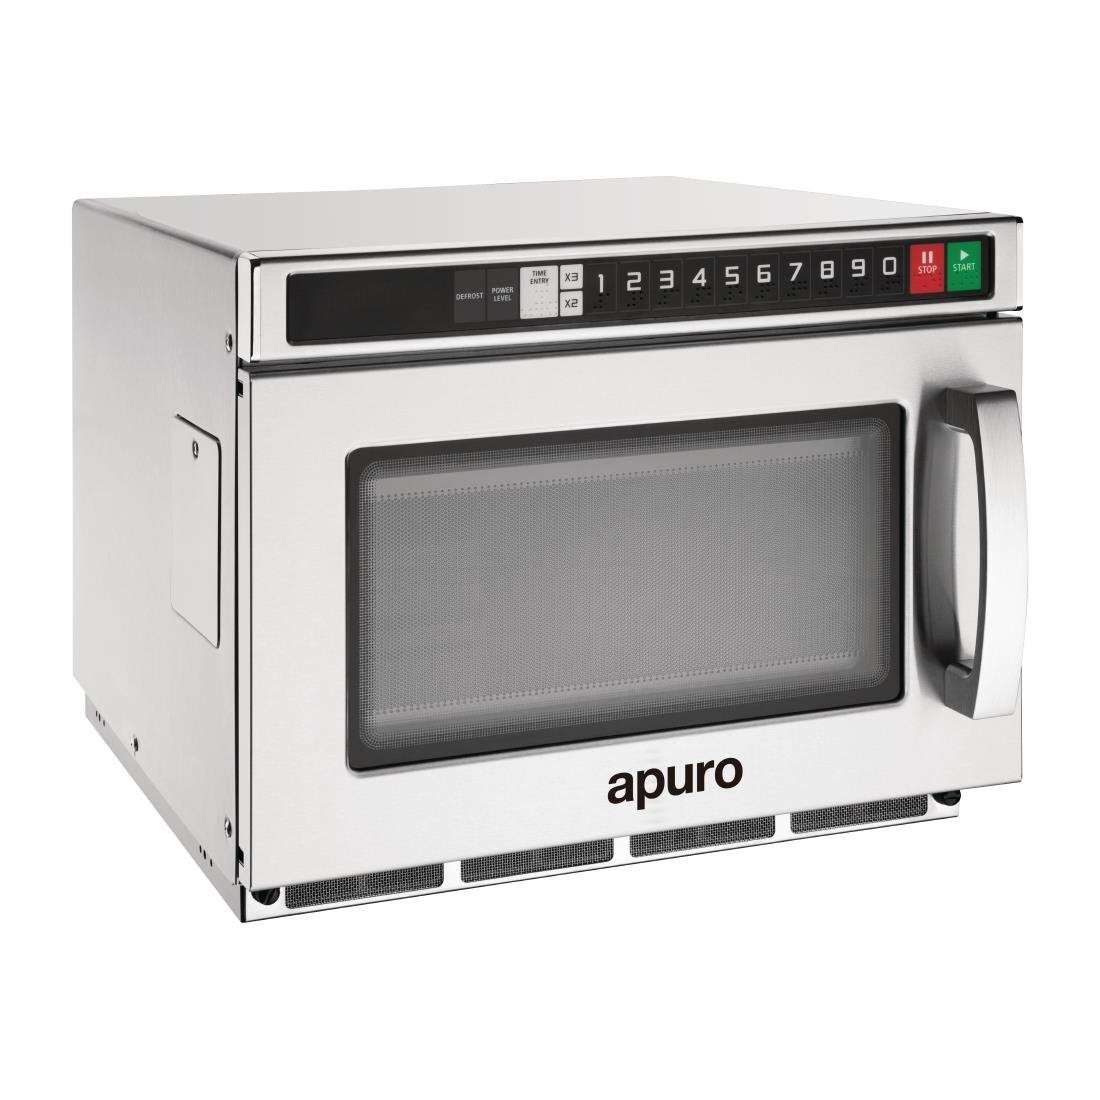 Apuro Heavy Duty Programmable Commercial Microwave 17Ltr FB865-A Commercial Microwave Ovens